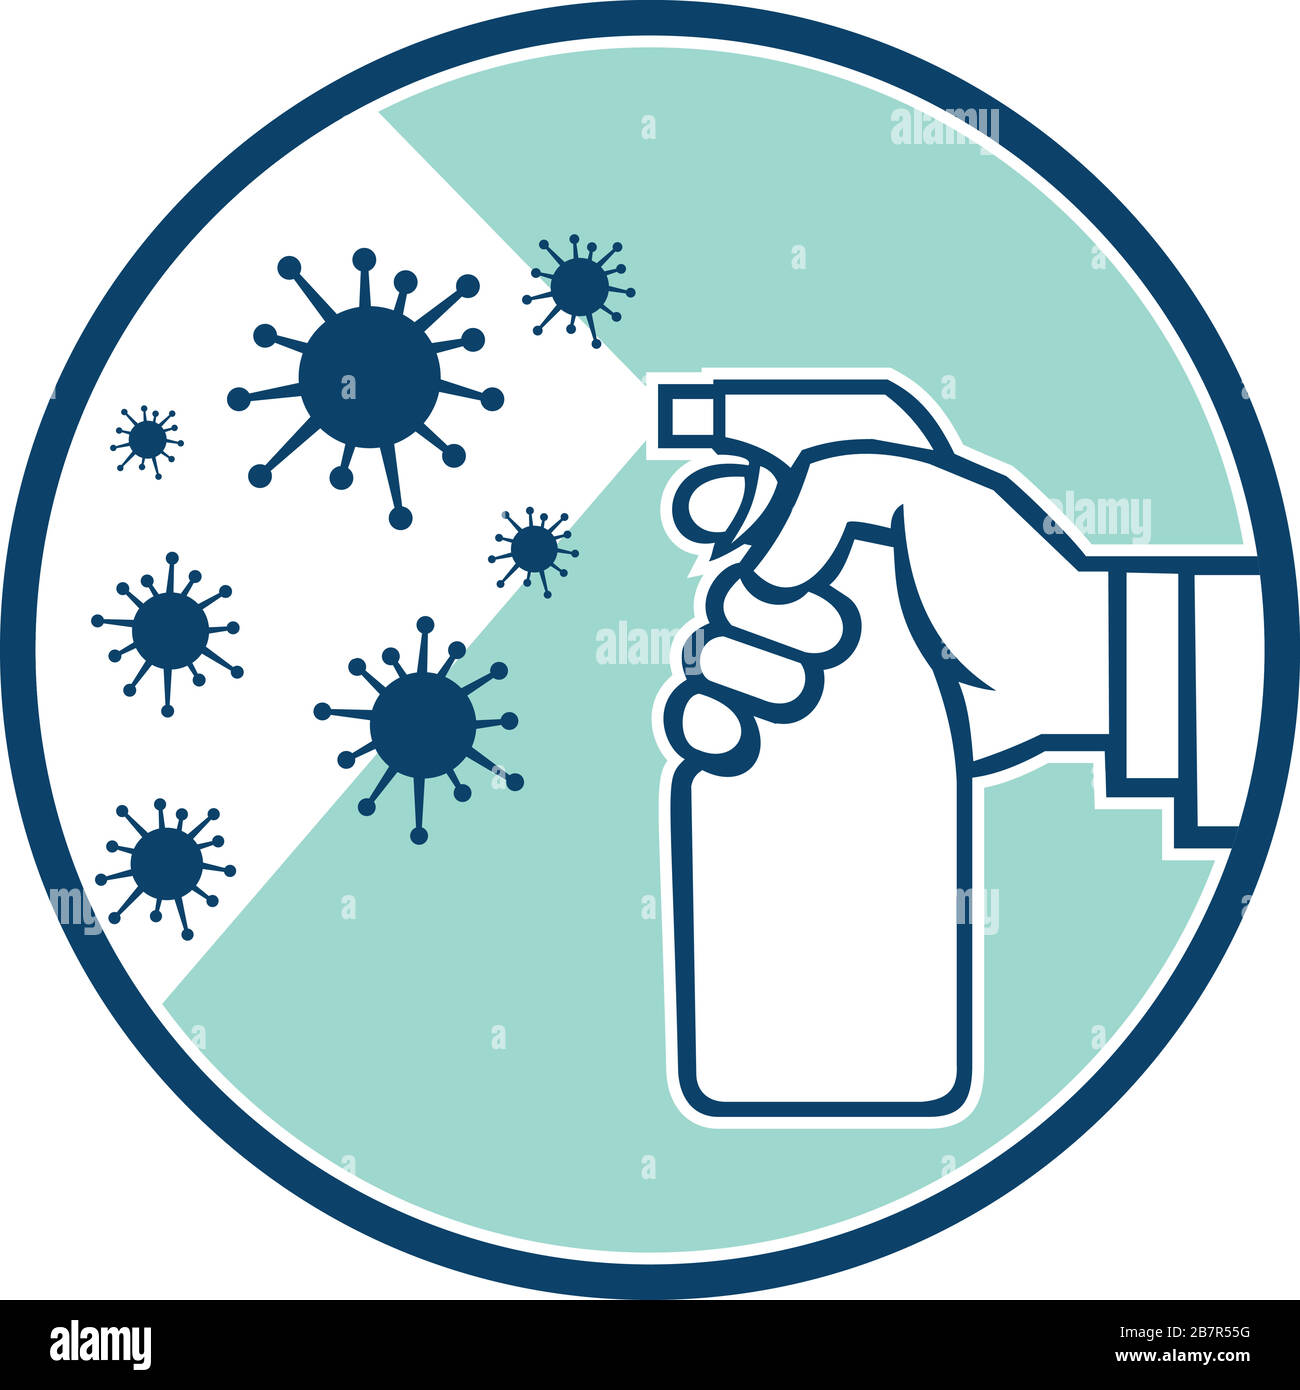 Icona retro illustrazione di un disinfettante spray spray a mano su cellule microscopiche per coronavirus, COVID-19 o virus influenzale posta all'interno del cerchio su Illustrazione Vettoriale